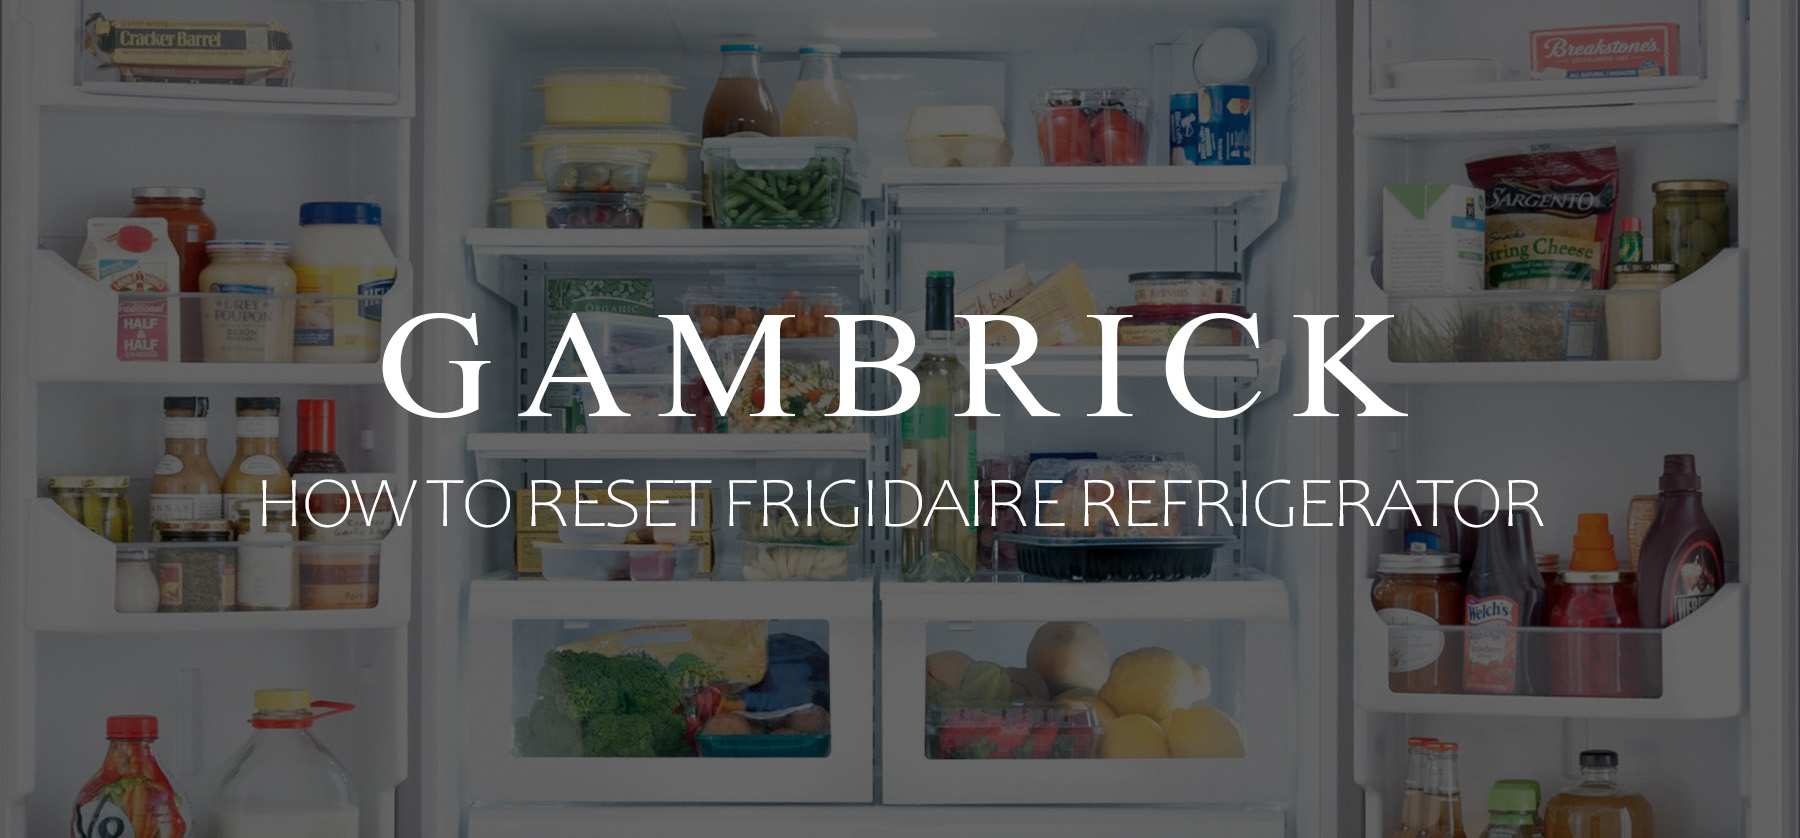 how to reset frigidaire refrigerator banner 1.0